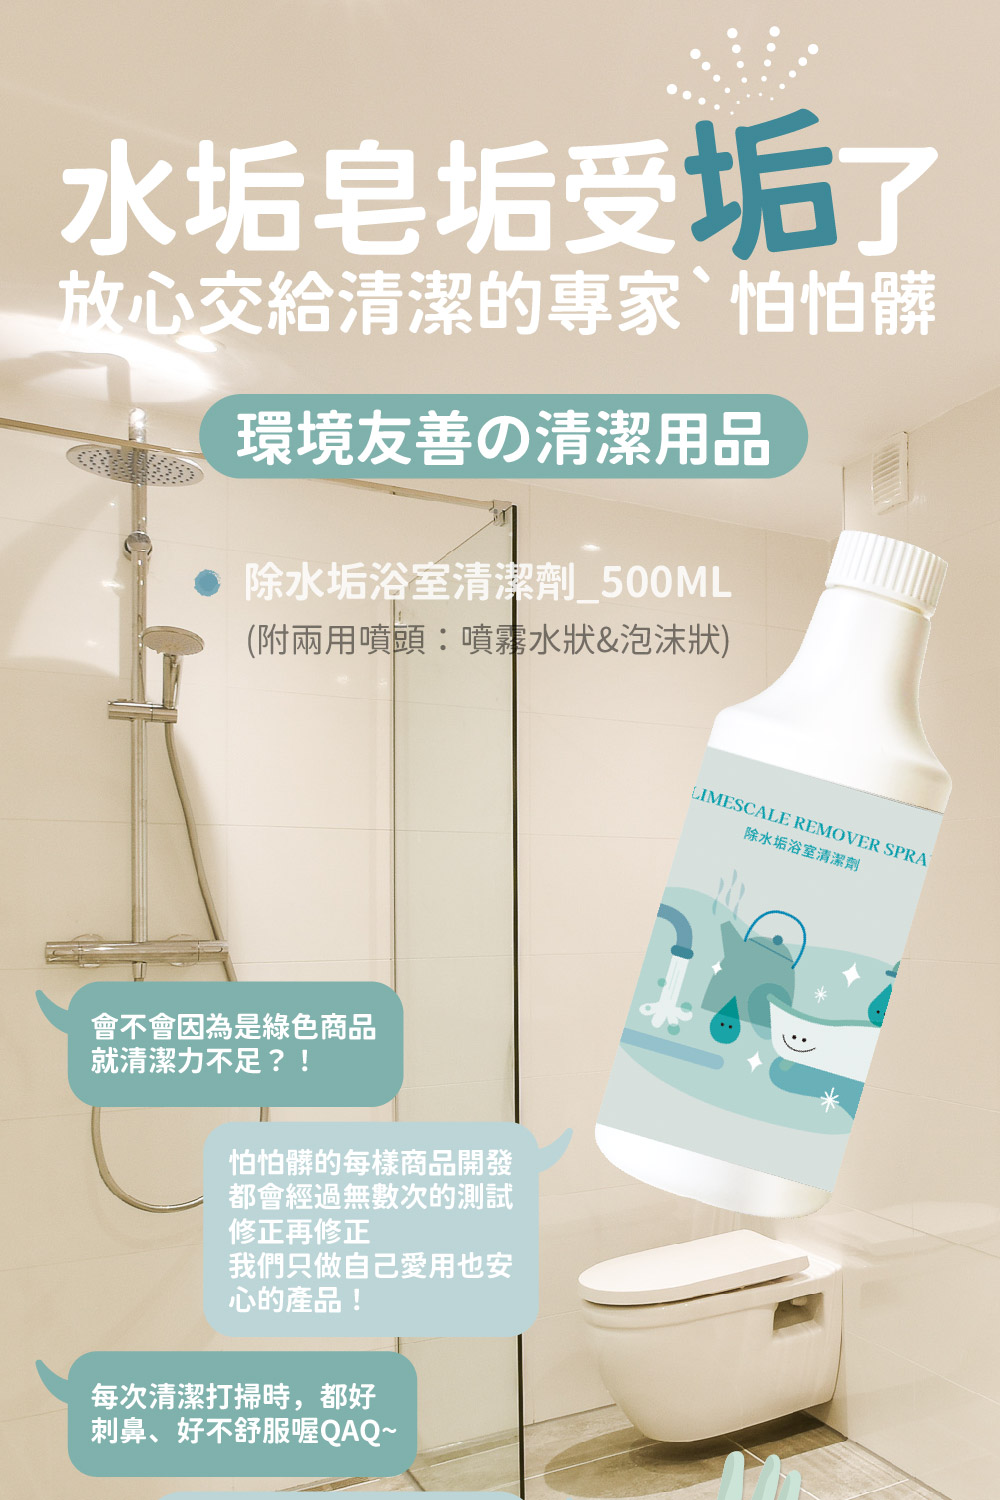 PAPA-Z 怕怕髒 除水垢浴室清潔劑品牌優惠